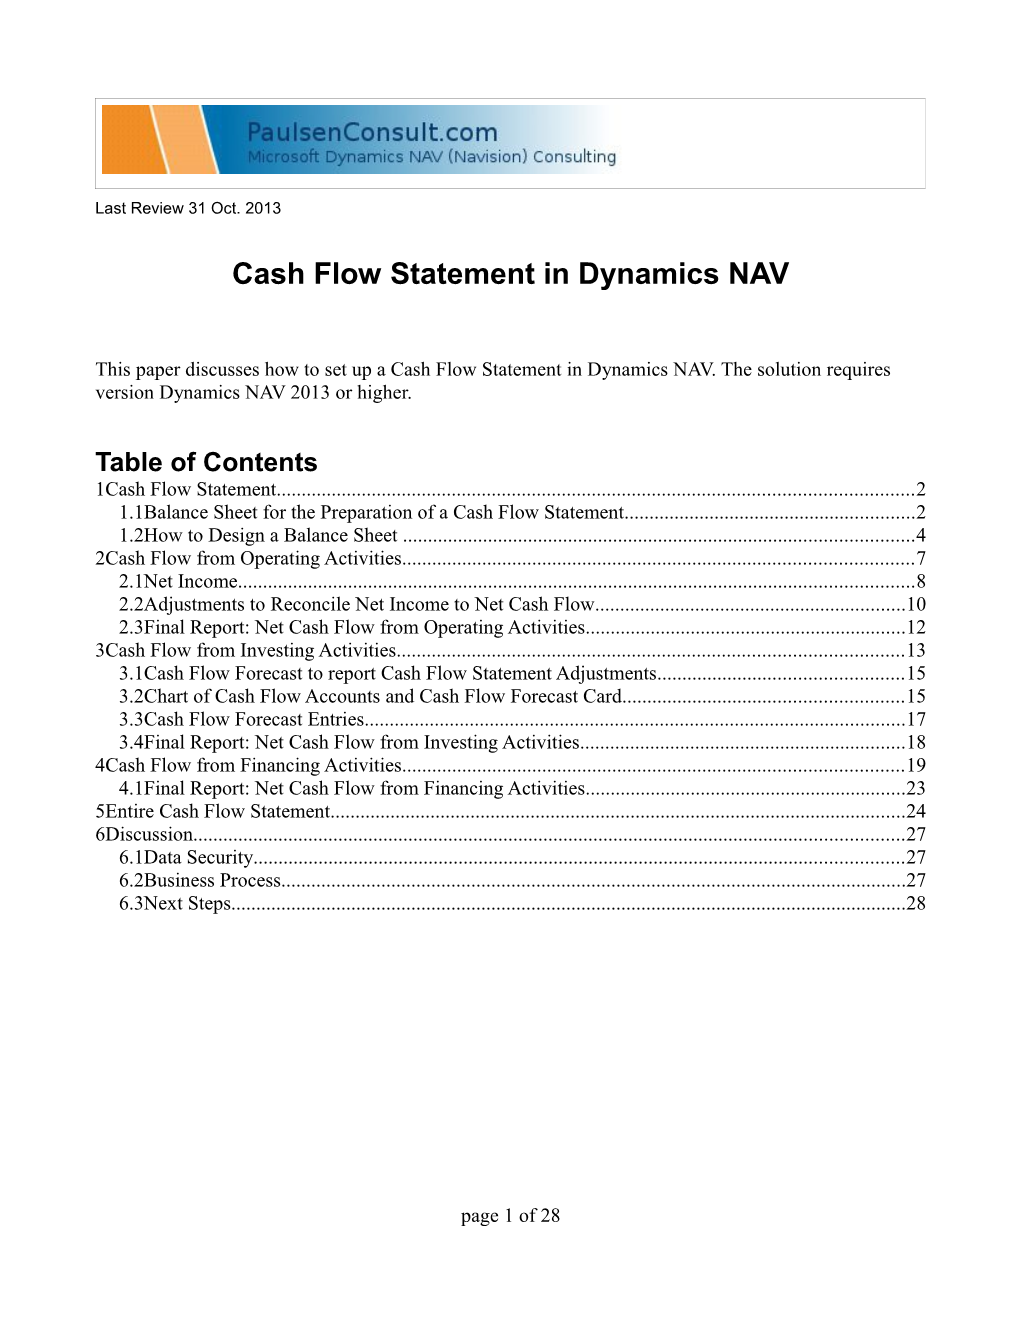 Cash Flow Statement in Dynamics NAV